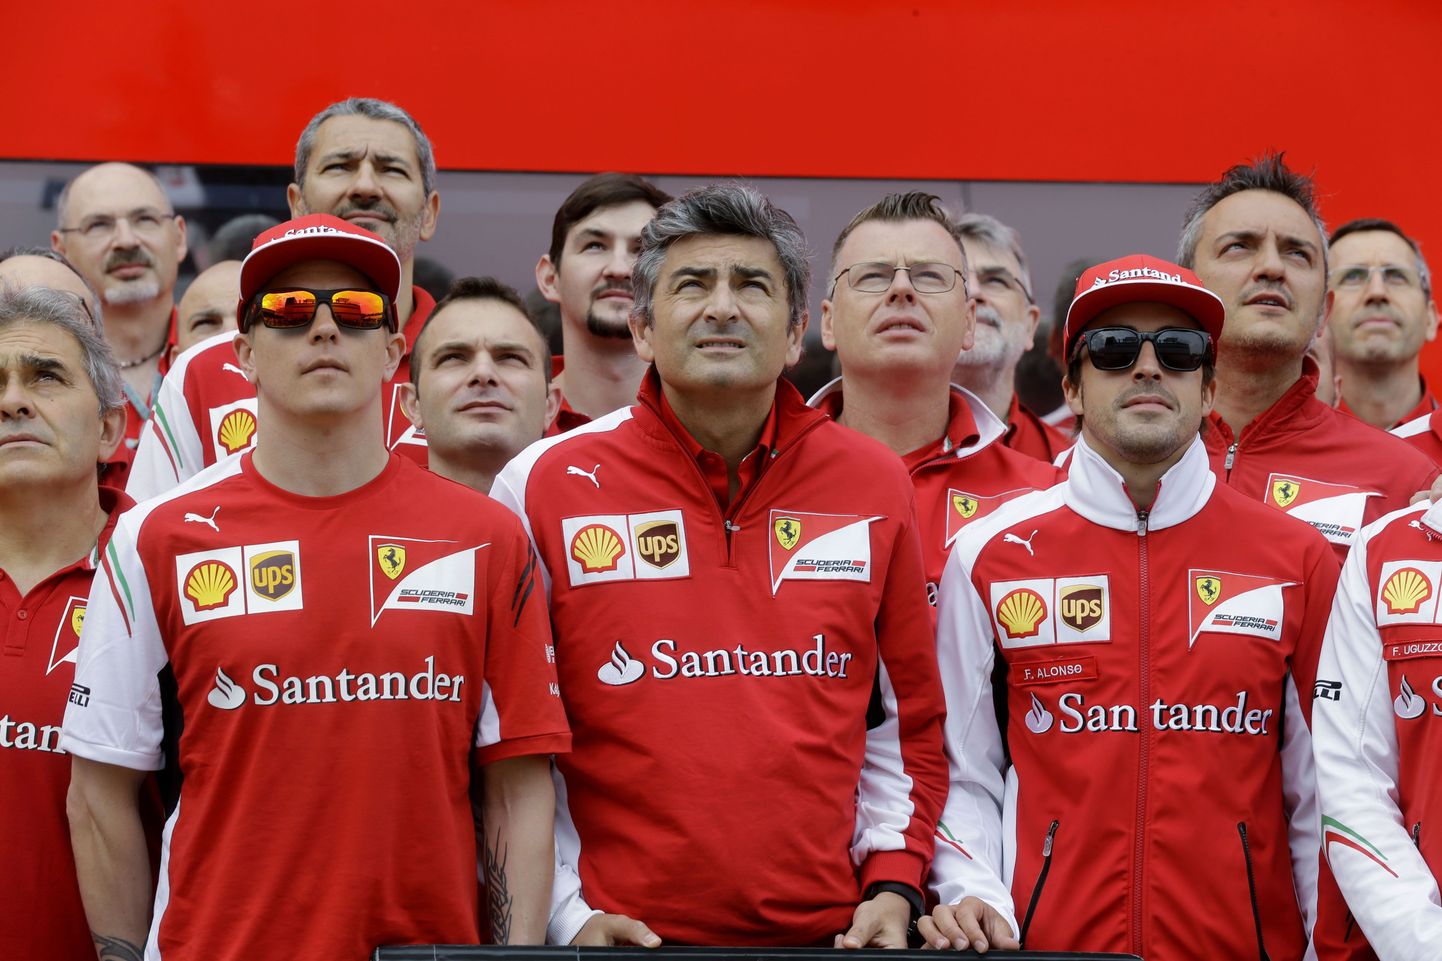 (Esireas vasakult): Ferrari sõitja Kimi Räikkönen, tiimipealik Marco Mattiacci  ja teine sõitja Fernando Alonso, tagumistes ridades Ferrari meeskonna liikmed.